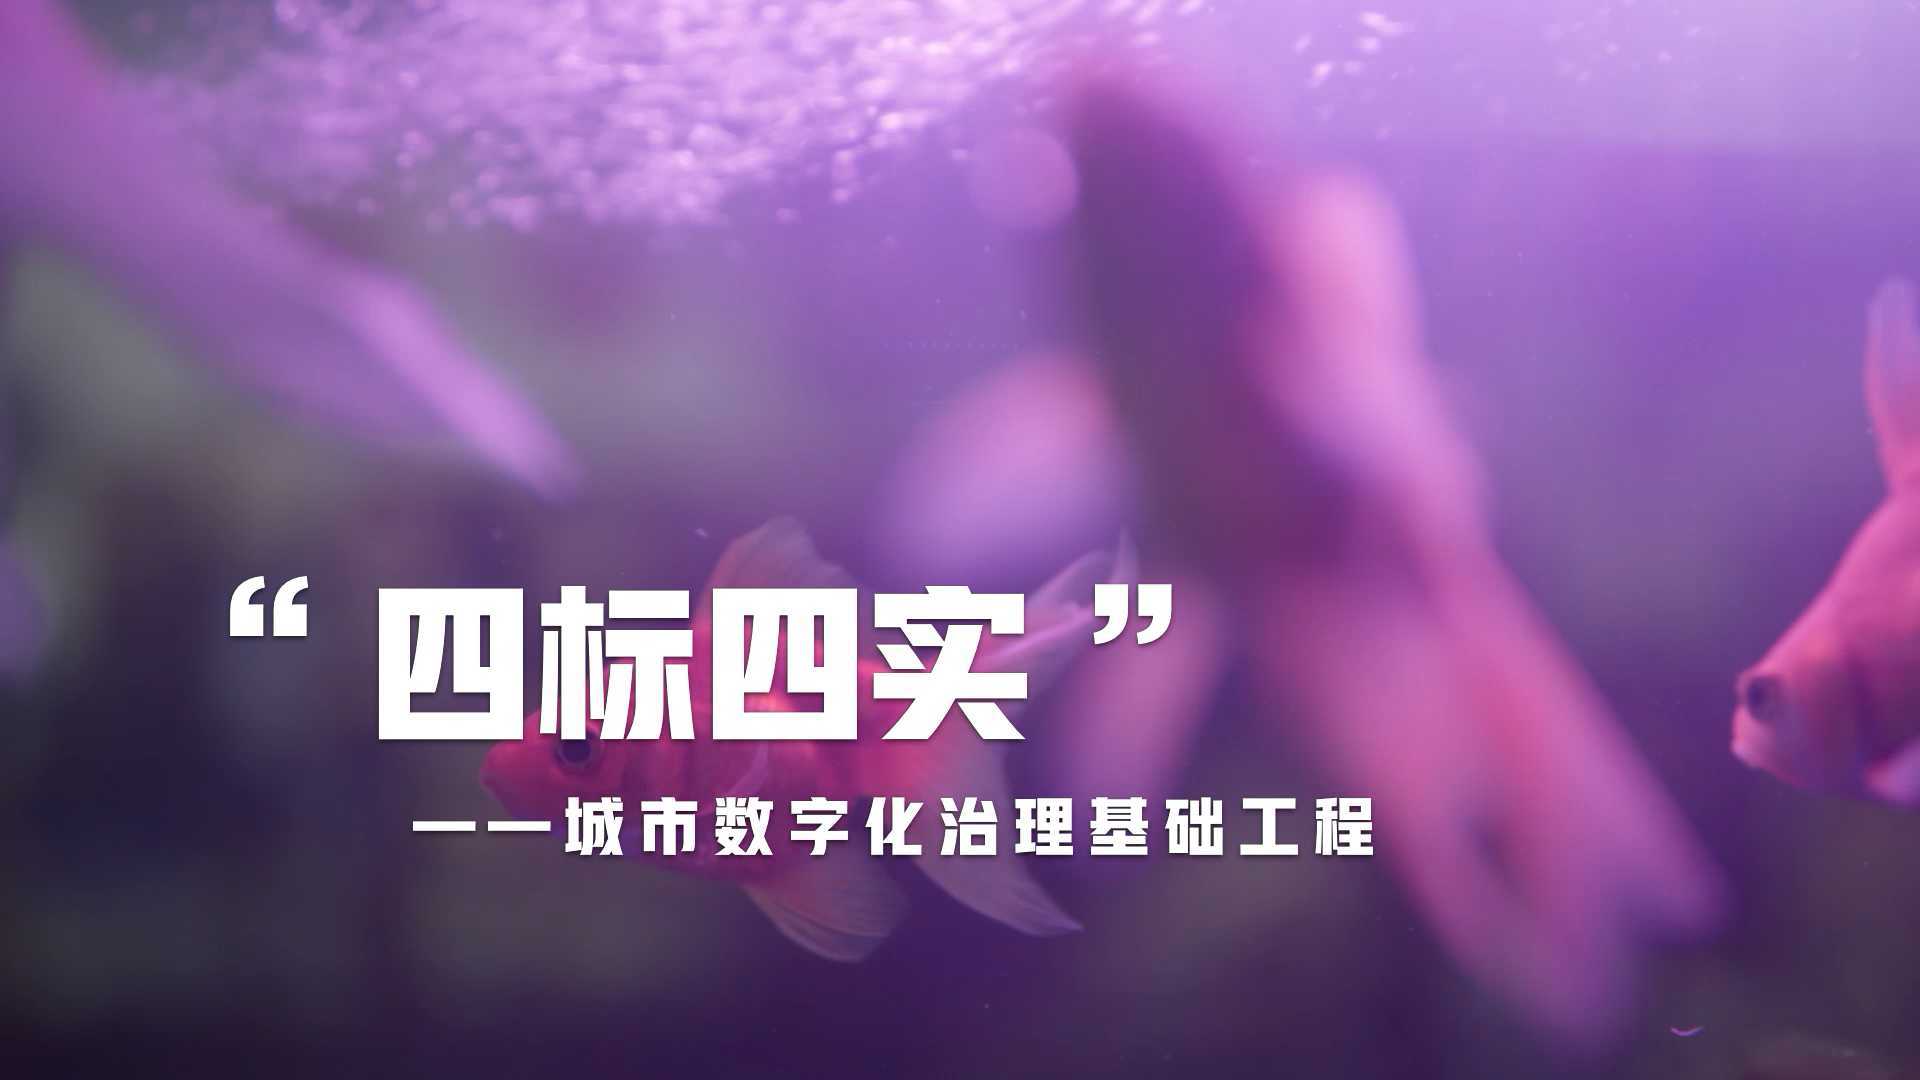 广州公安 四开四实 宣传片